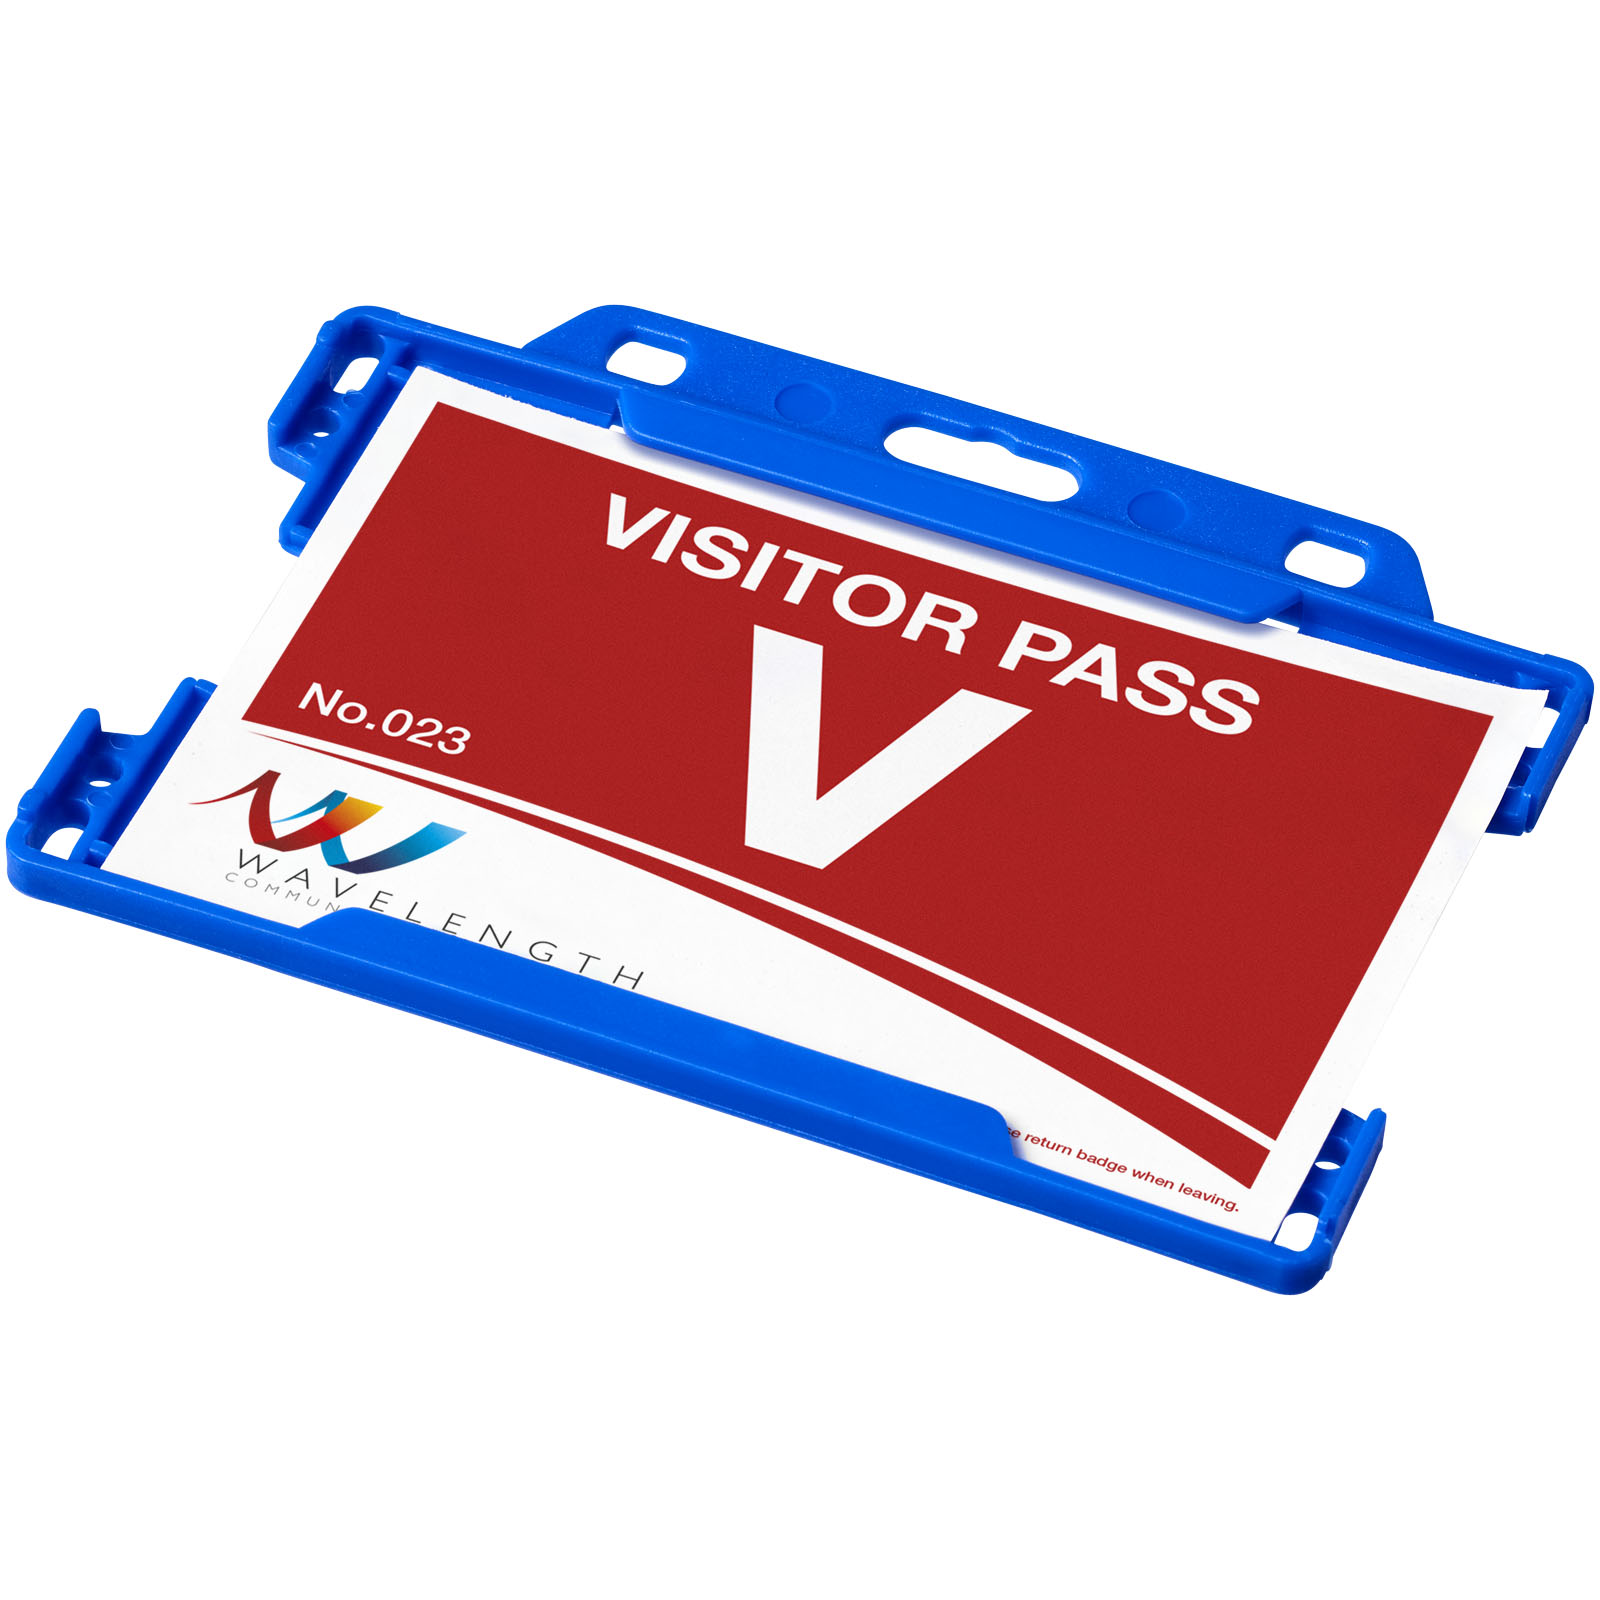 Blocs-notes et essentiels pour le bureau - Porte-cartes Vega en plastique